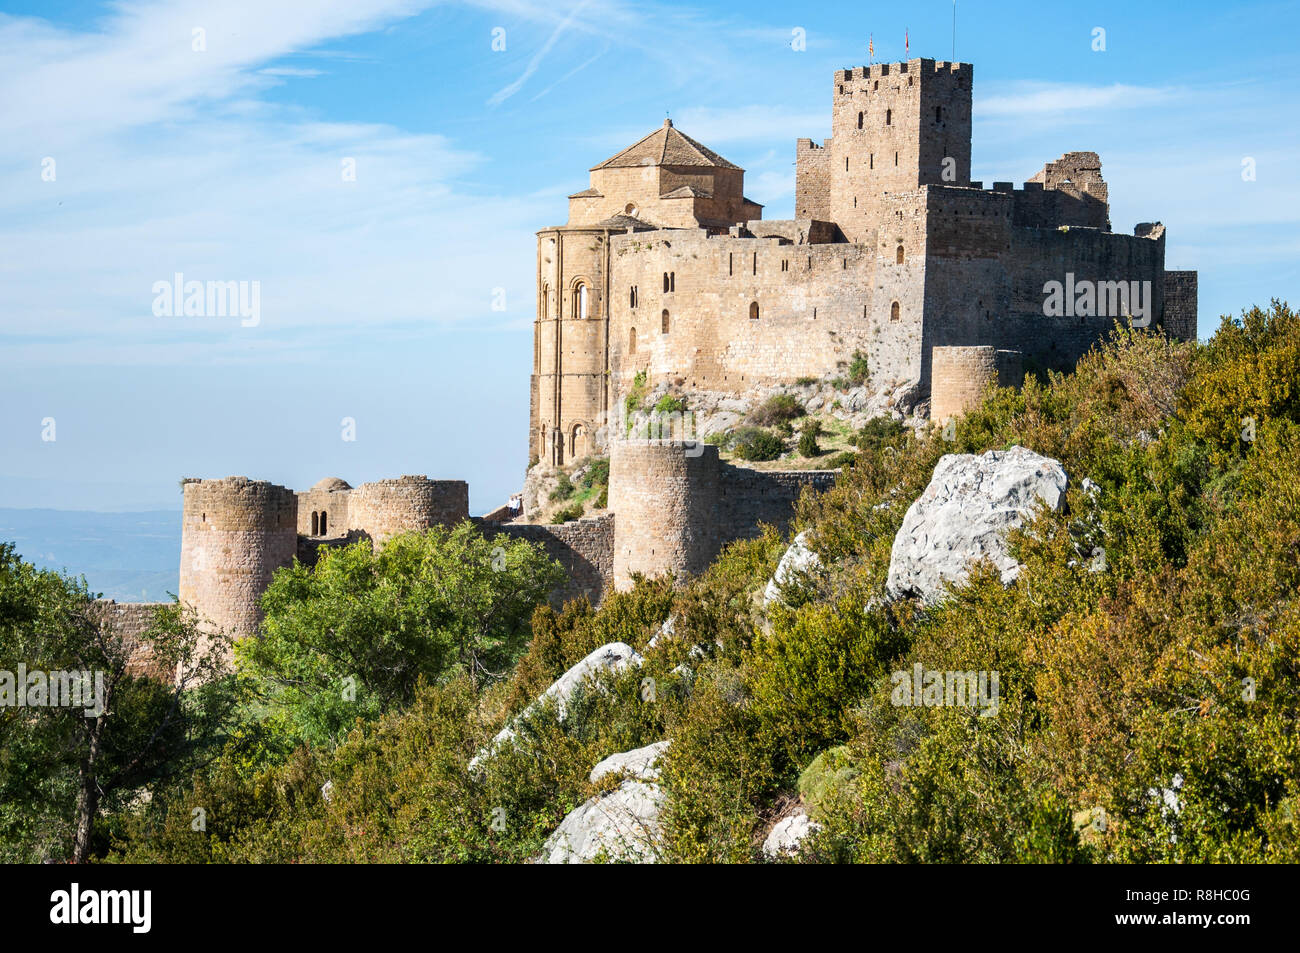 Il castello di Loarre sorge su uno sperone roccioso in provincia di Huesca nella regione di Aragona di Spagna. È il meglio conservato castello romanico in Europa. Foto Stock